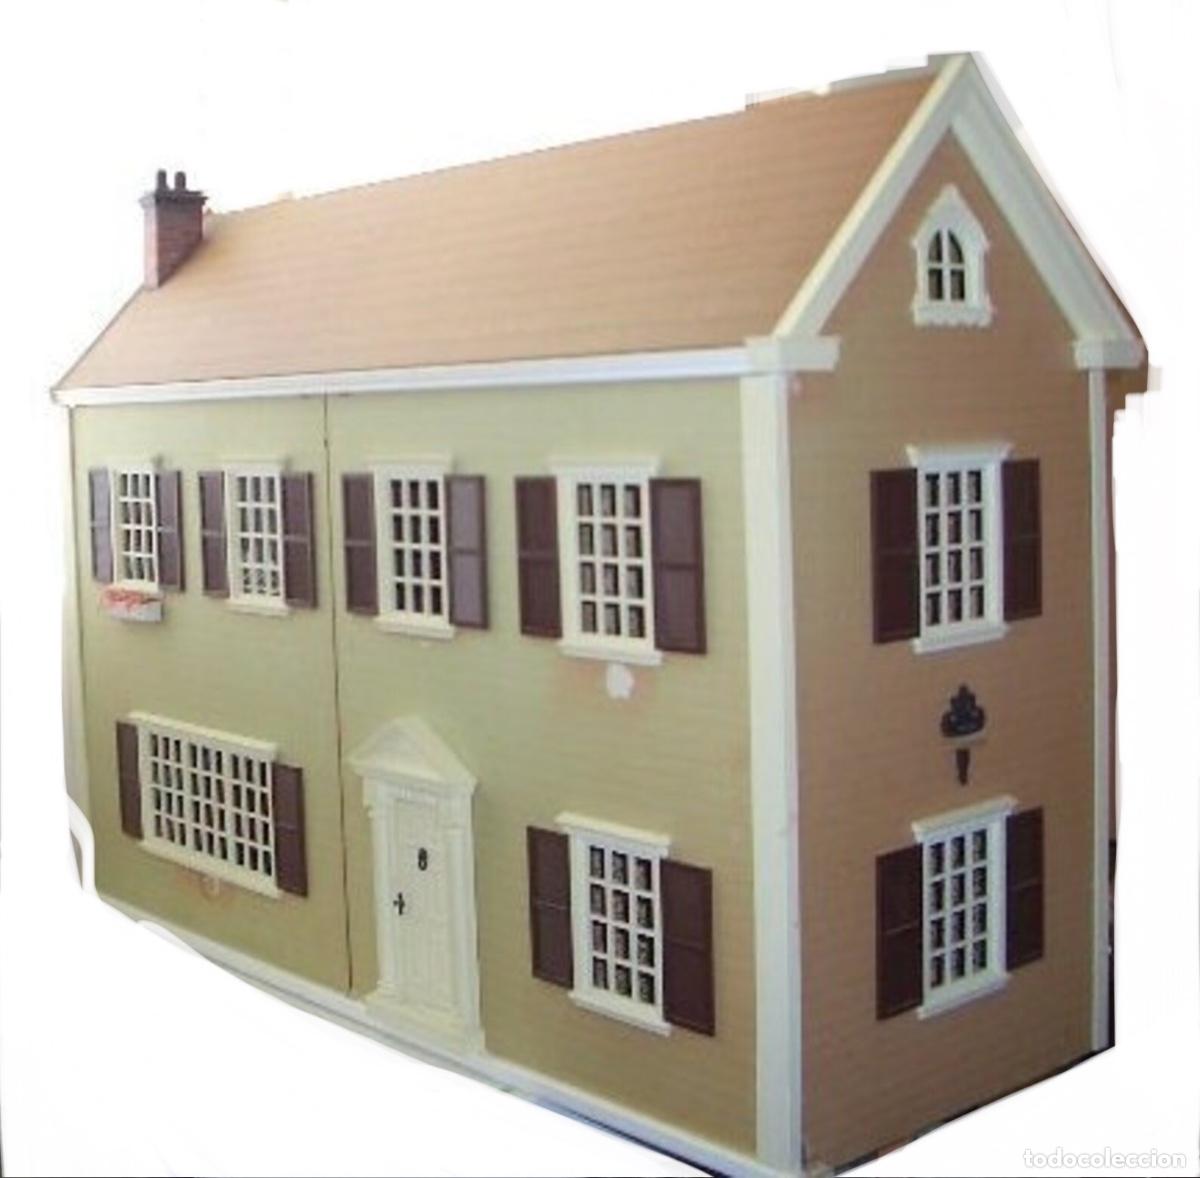 casa de muñecas antigua de madera - Compra venta en todocoleccion